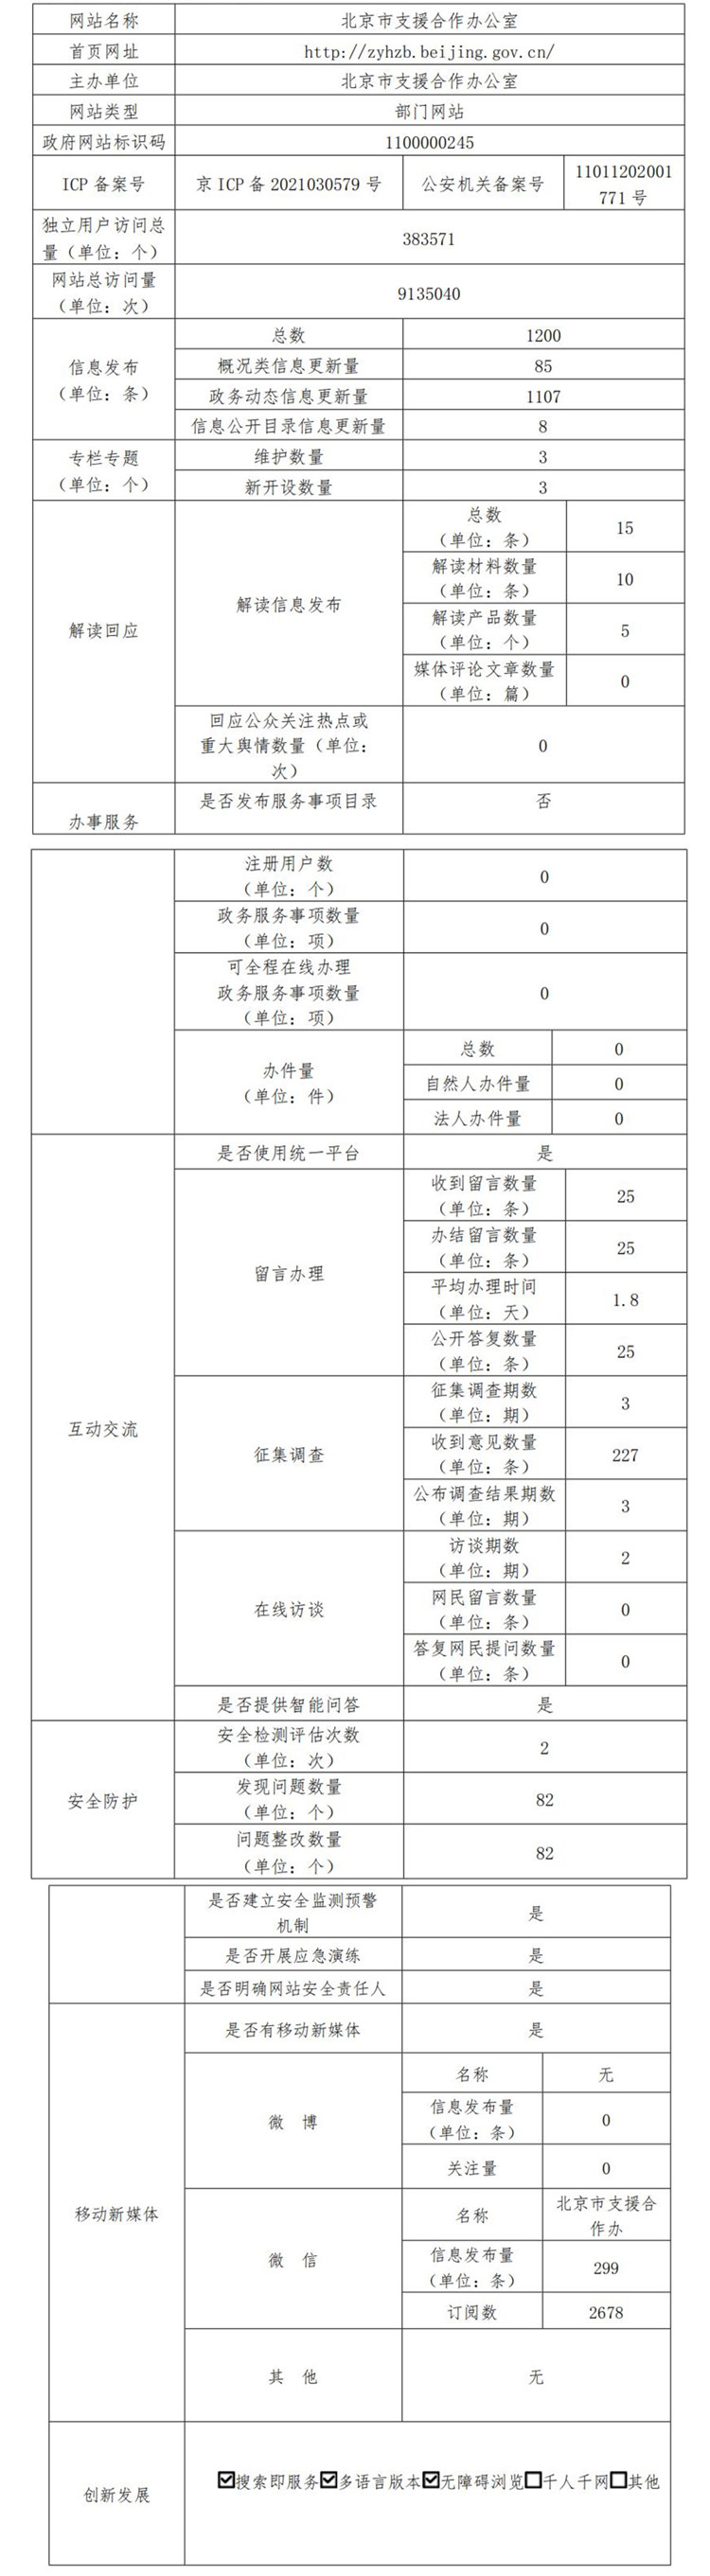 北京市支援合作辦公室2021年政府網站年度工作報表